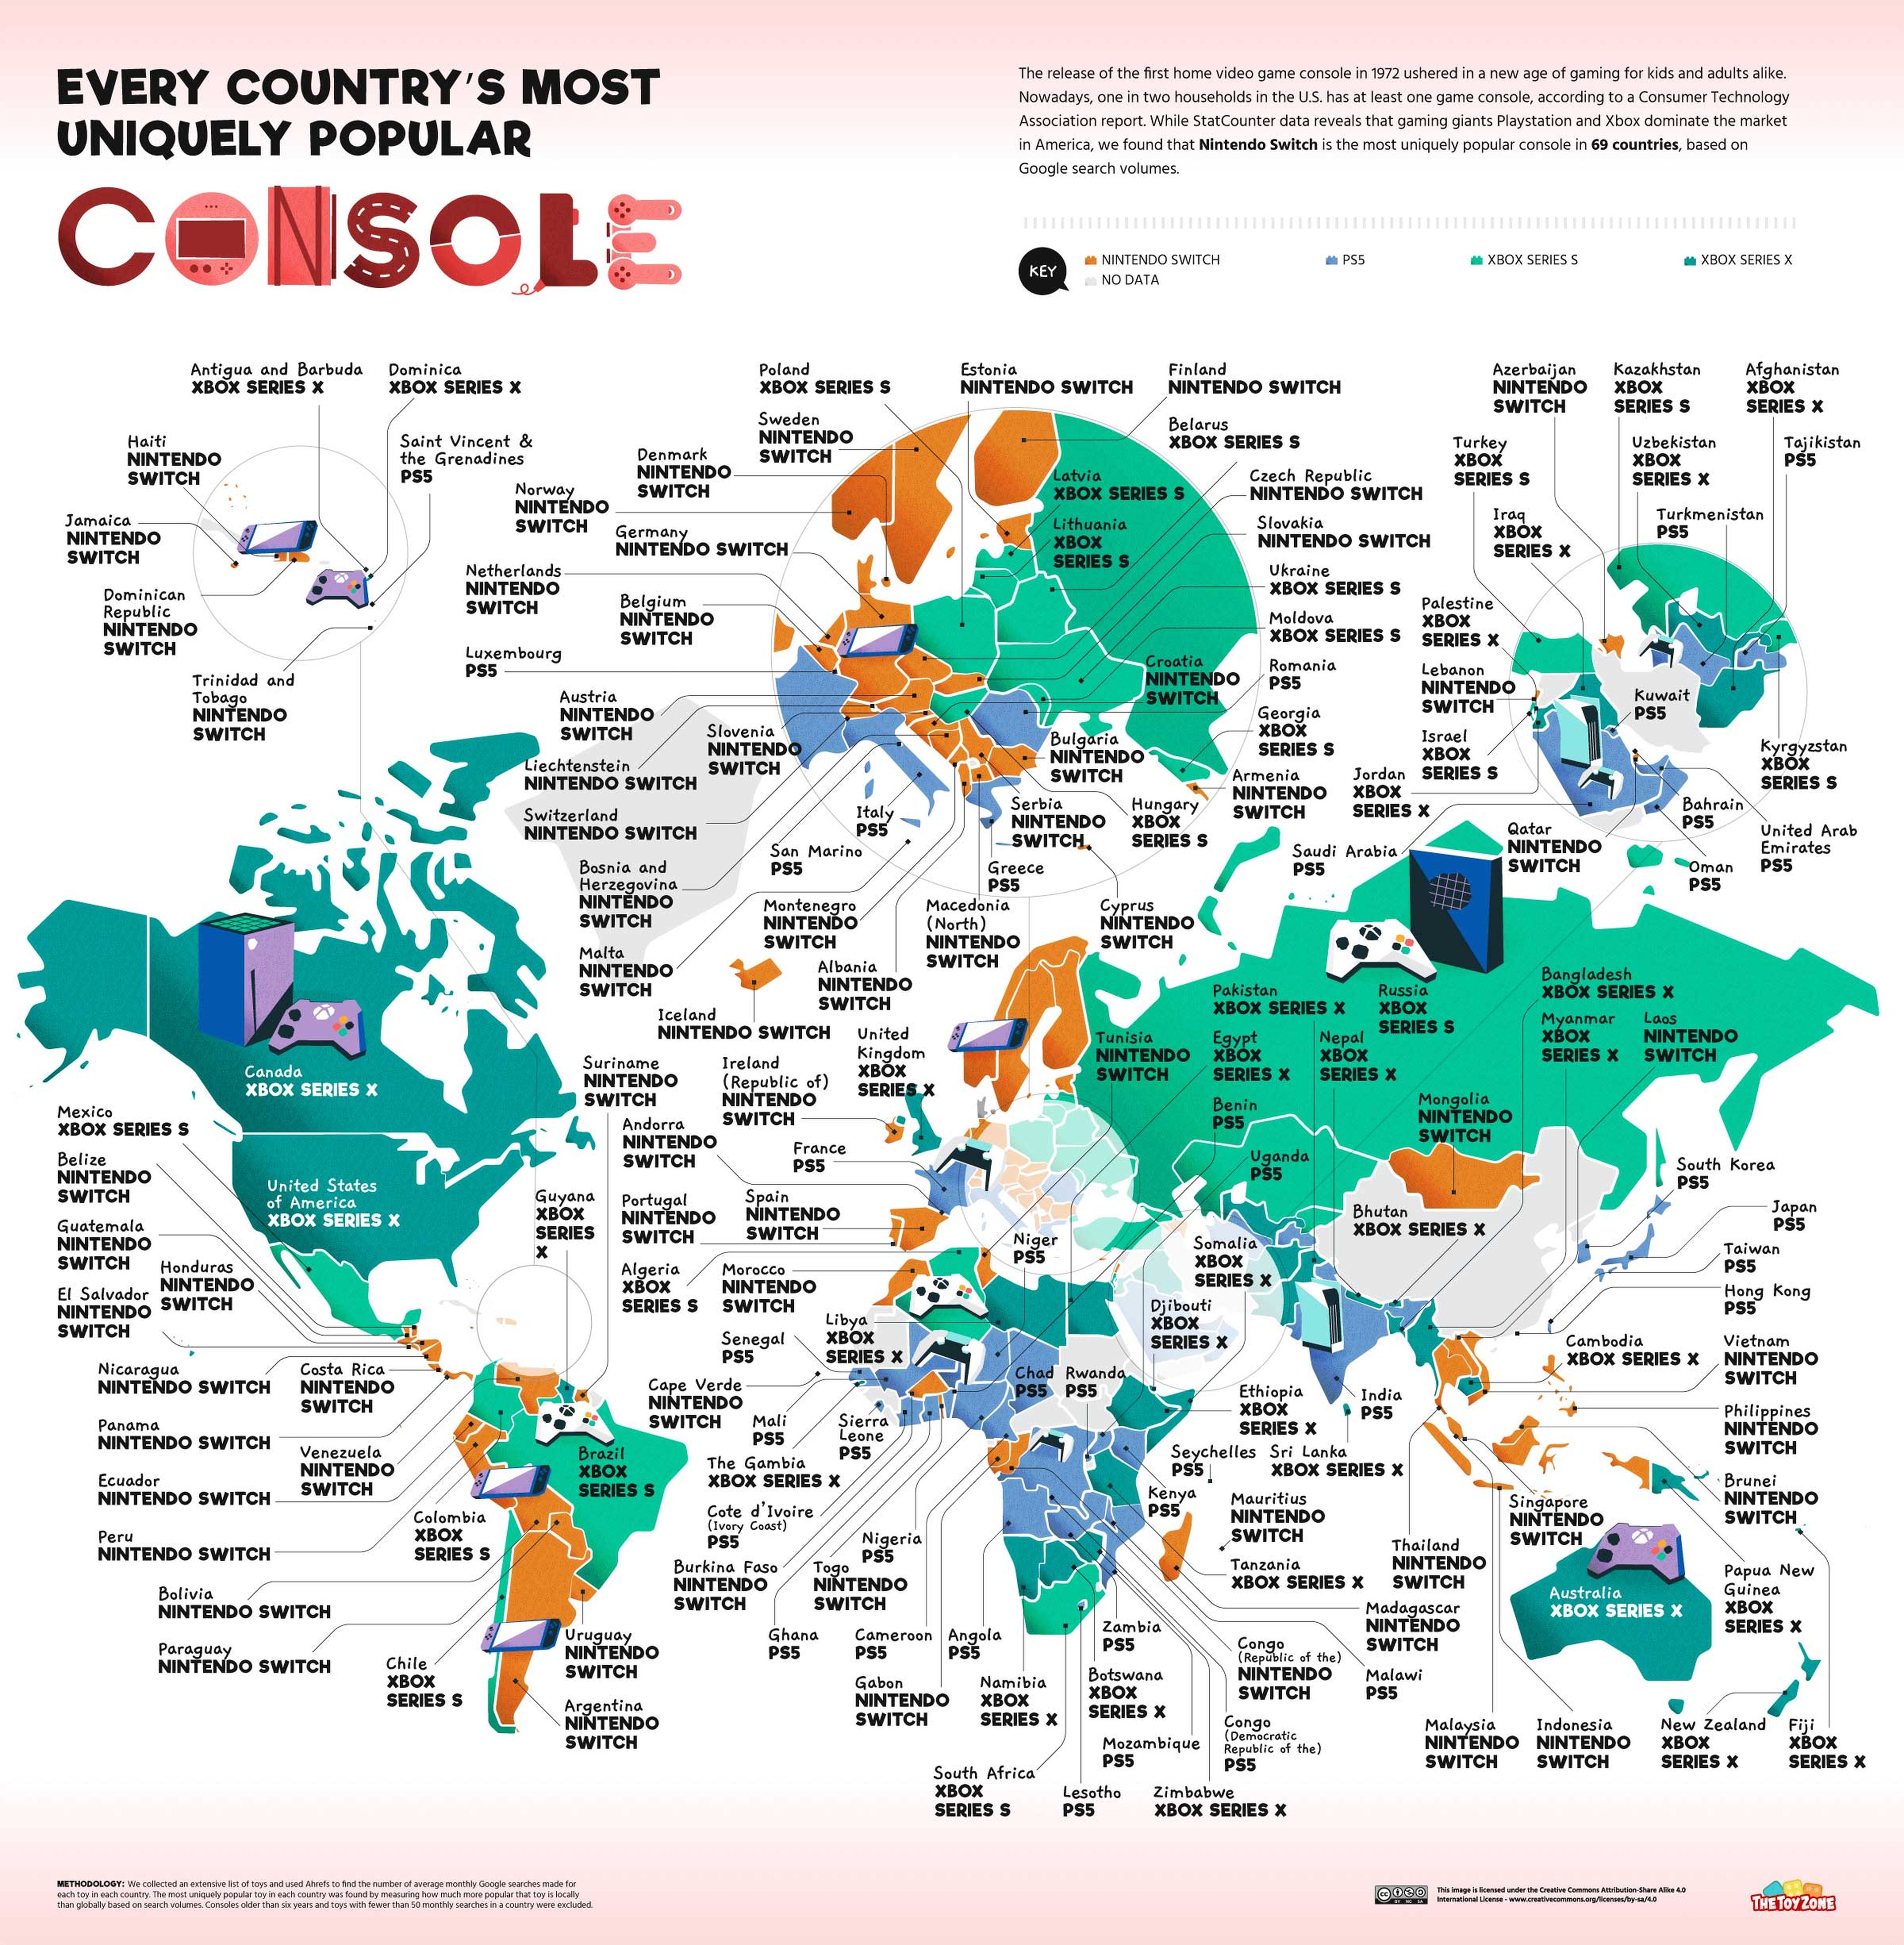 Este mapa muestra el juguete favorito de todos los países del mundo